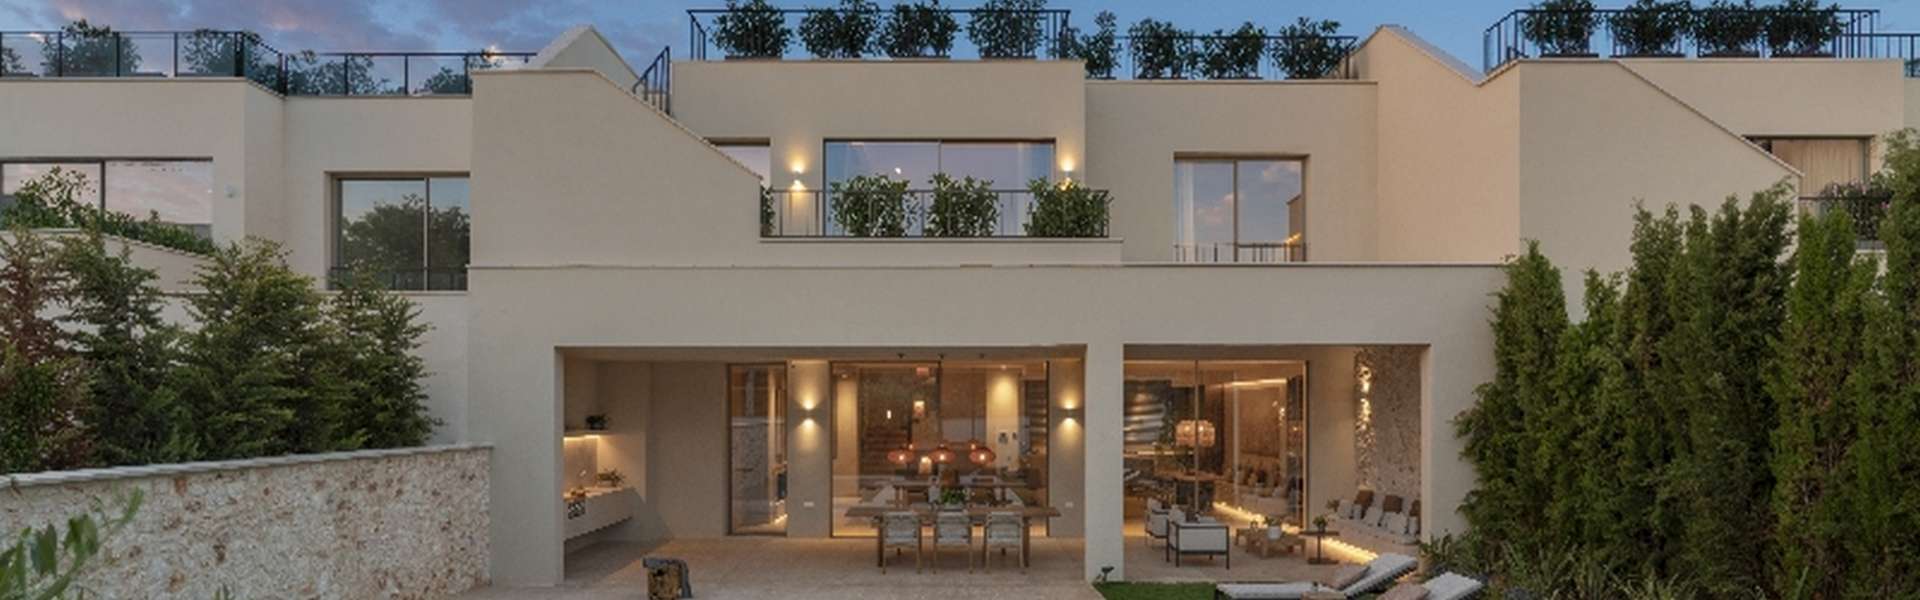 Santanyi/Cala Figuera - Traumhafte Villa zum Verkauf